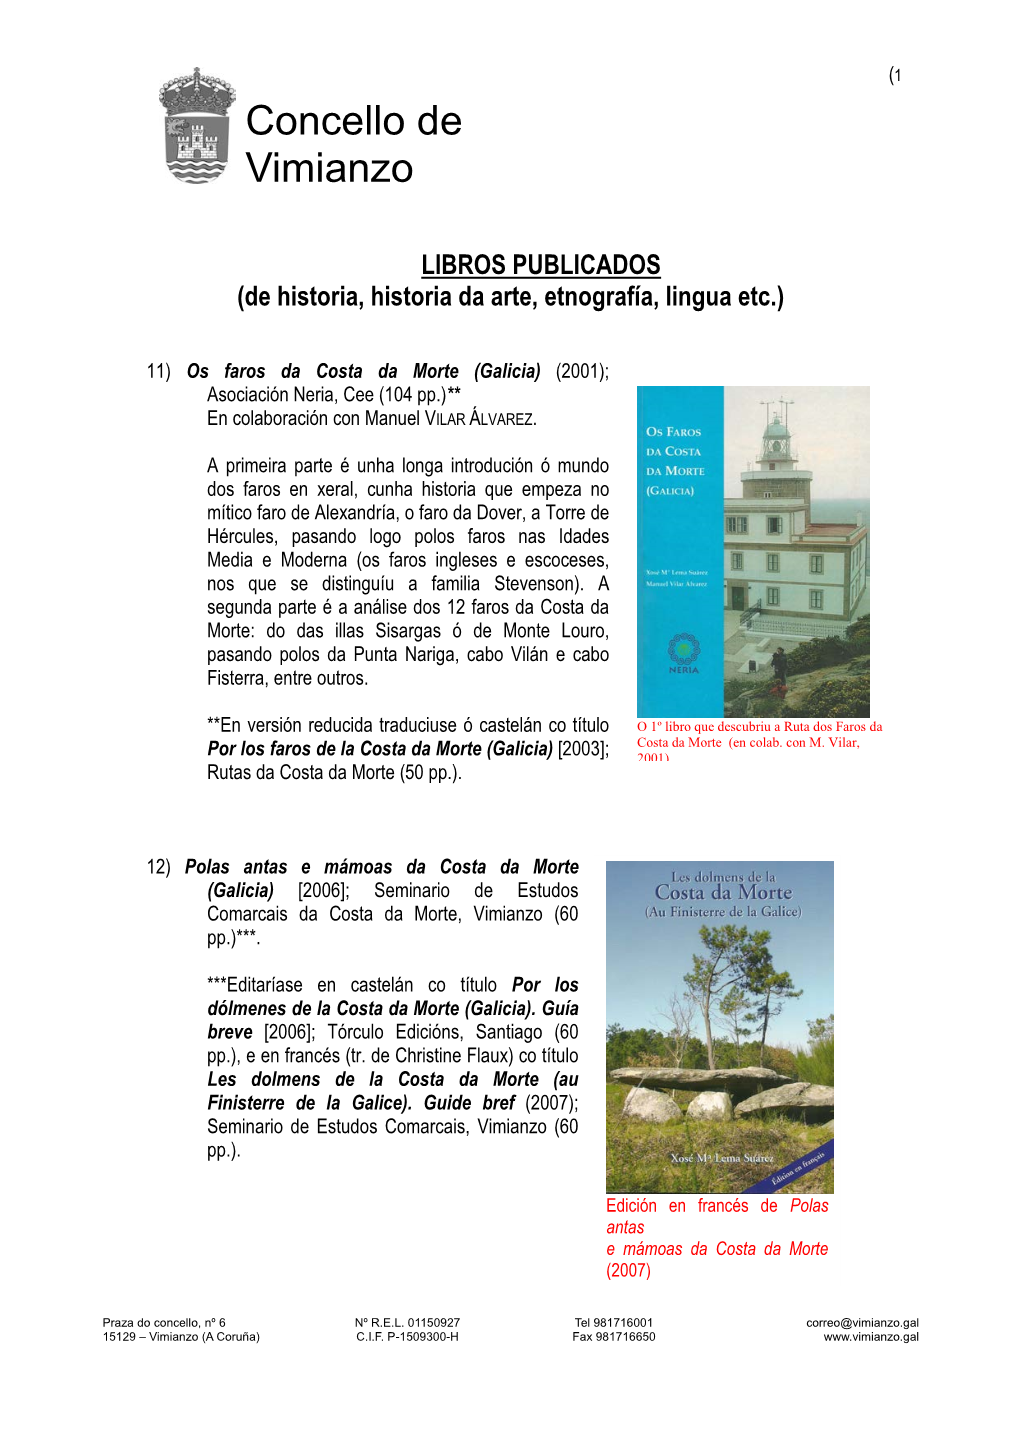 LIBROS PUBLICADOS (De Historia, Historia Da Arte, Etnografía, Lingua Etc.)